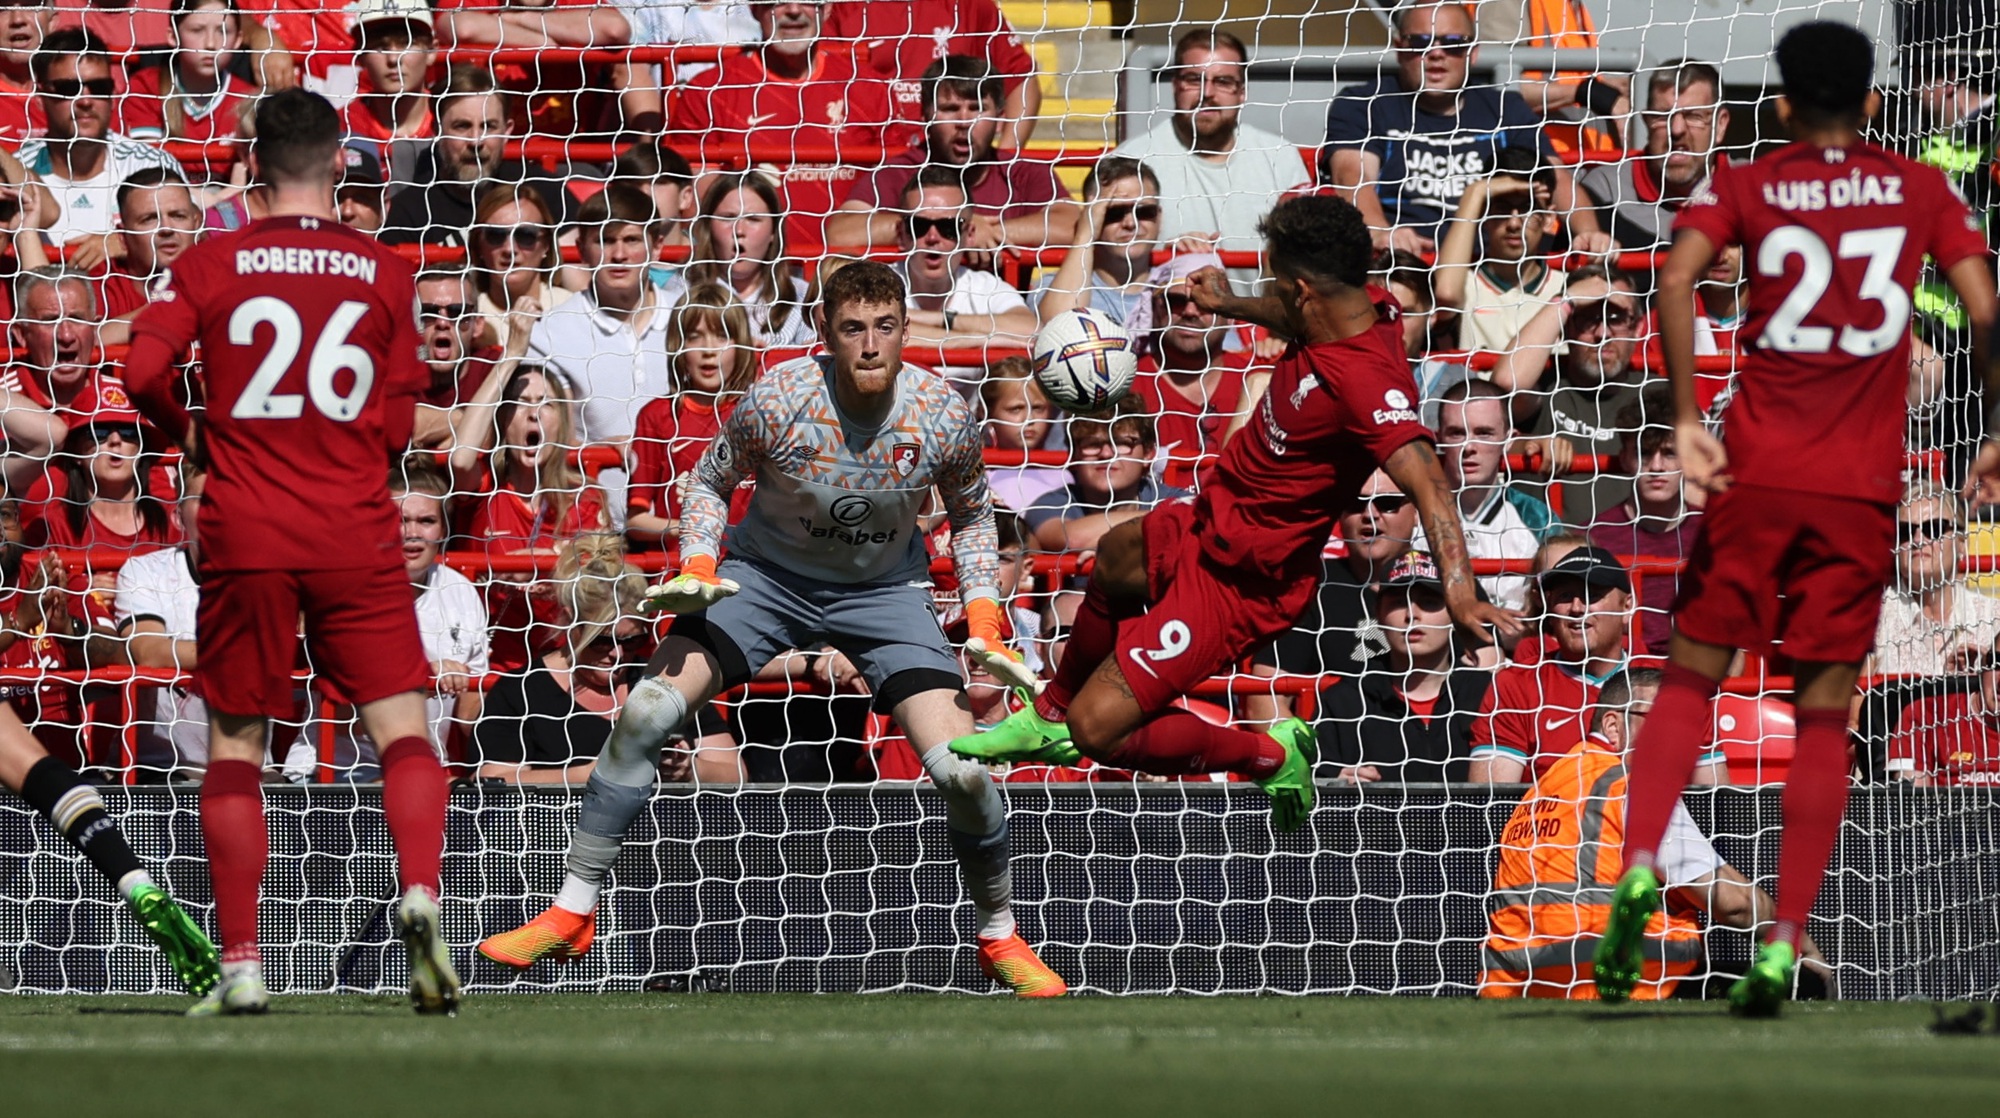 Thắng vùi dập Bournemouth 9-0, Liverpool bắt kịp kỷ lục xứ sương mù - Ảnh 6.